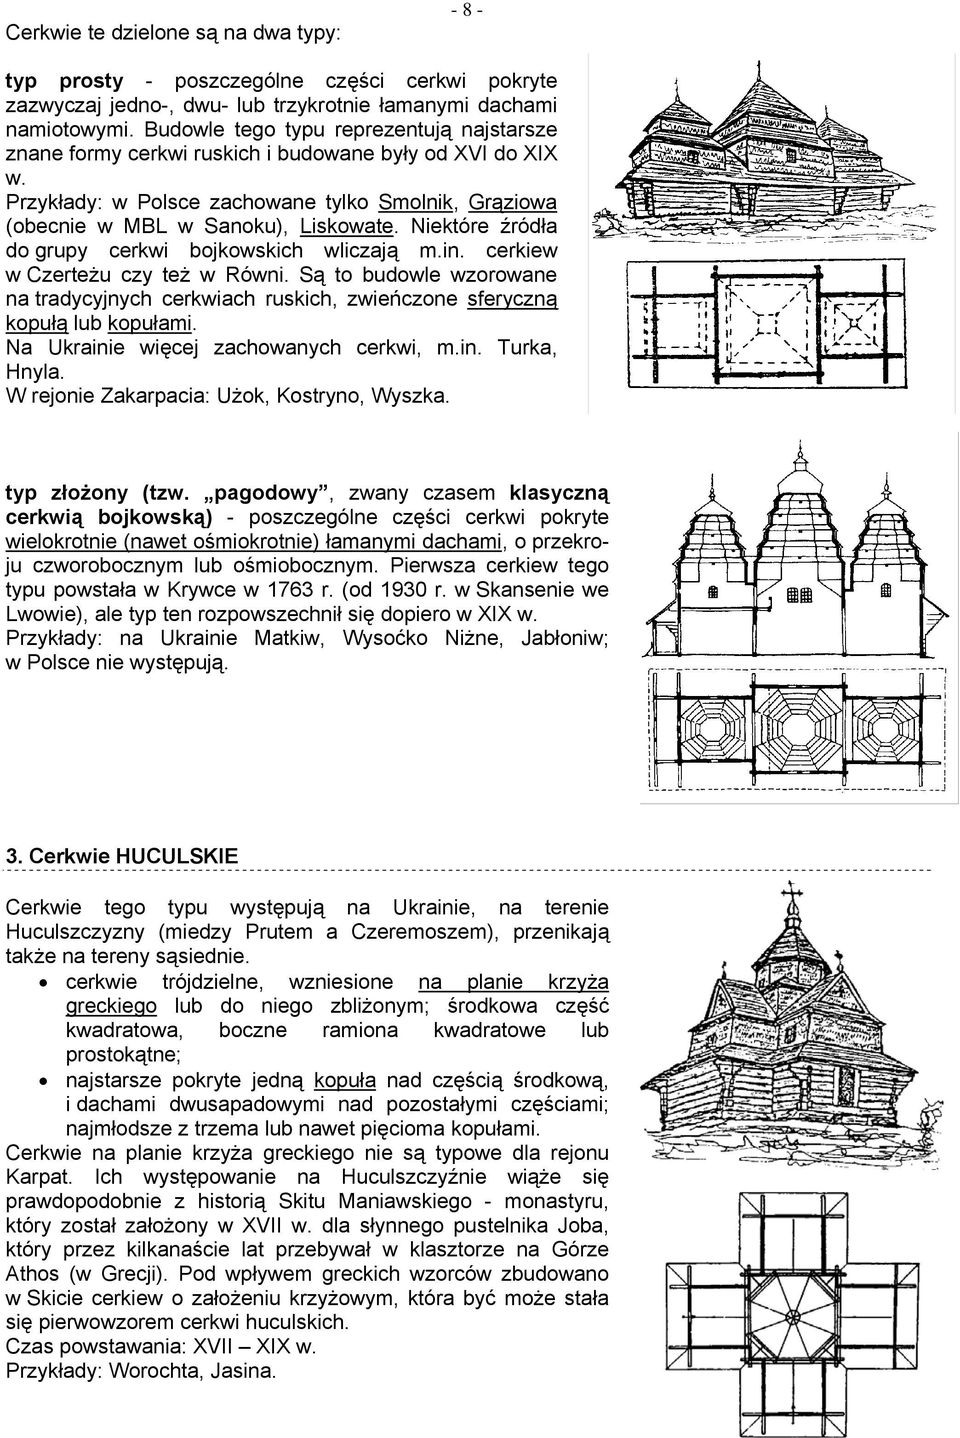 Niektóre źródła do grupy cerkwi bojkowskich wliczają m.in. cerkiew w Czerteżu czy też w Równi. Są to budowle wzorowane na tradycyjnych cerkwiach ruskich, zwieńczone sferyczną kopułą lub kopułami.